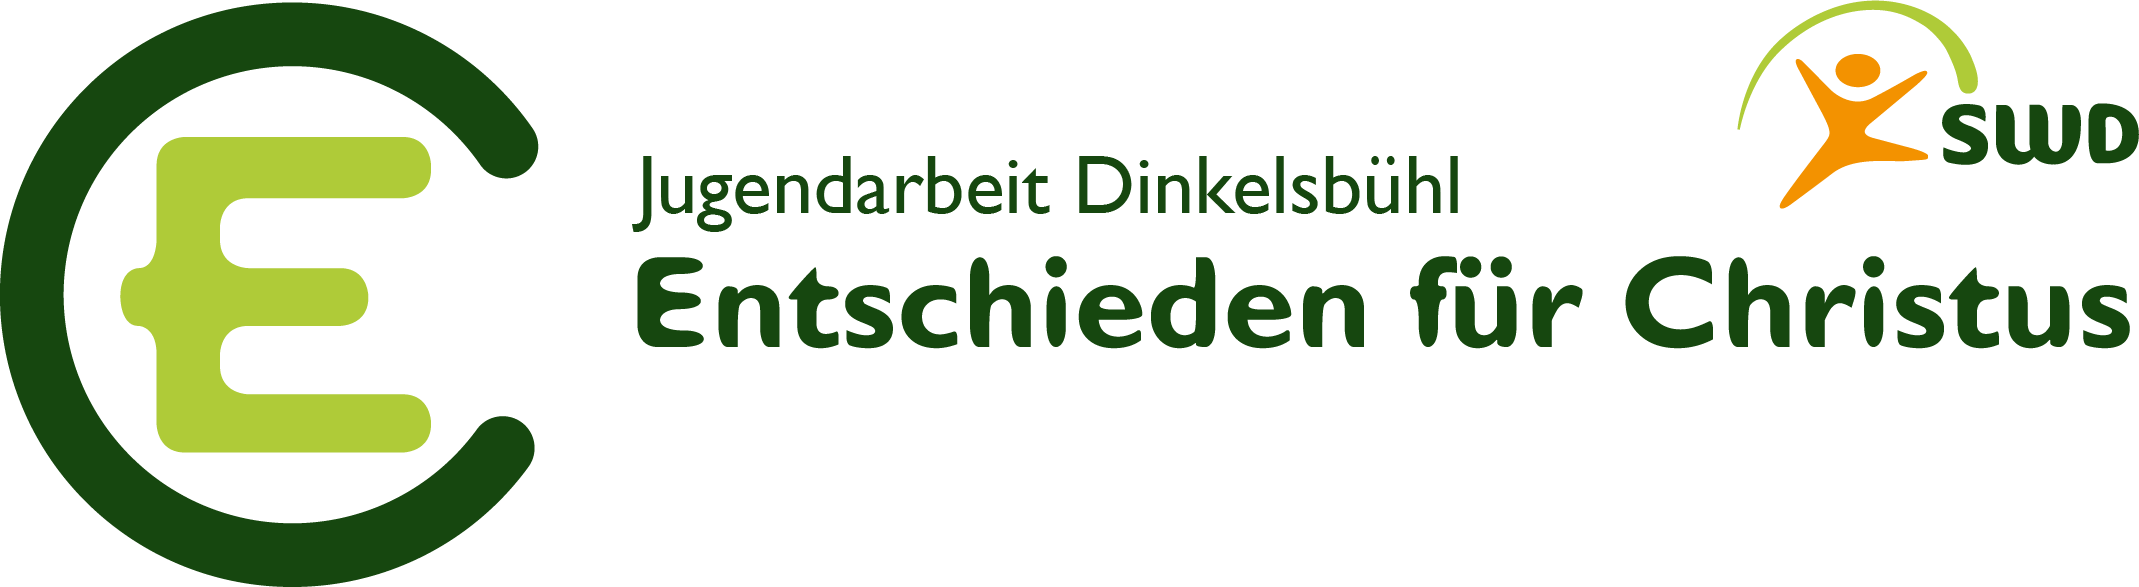 EC Dinkelsbühl